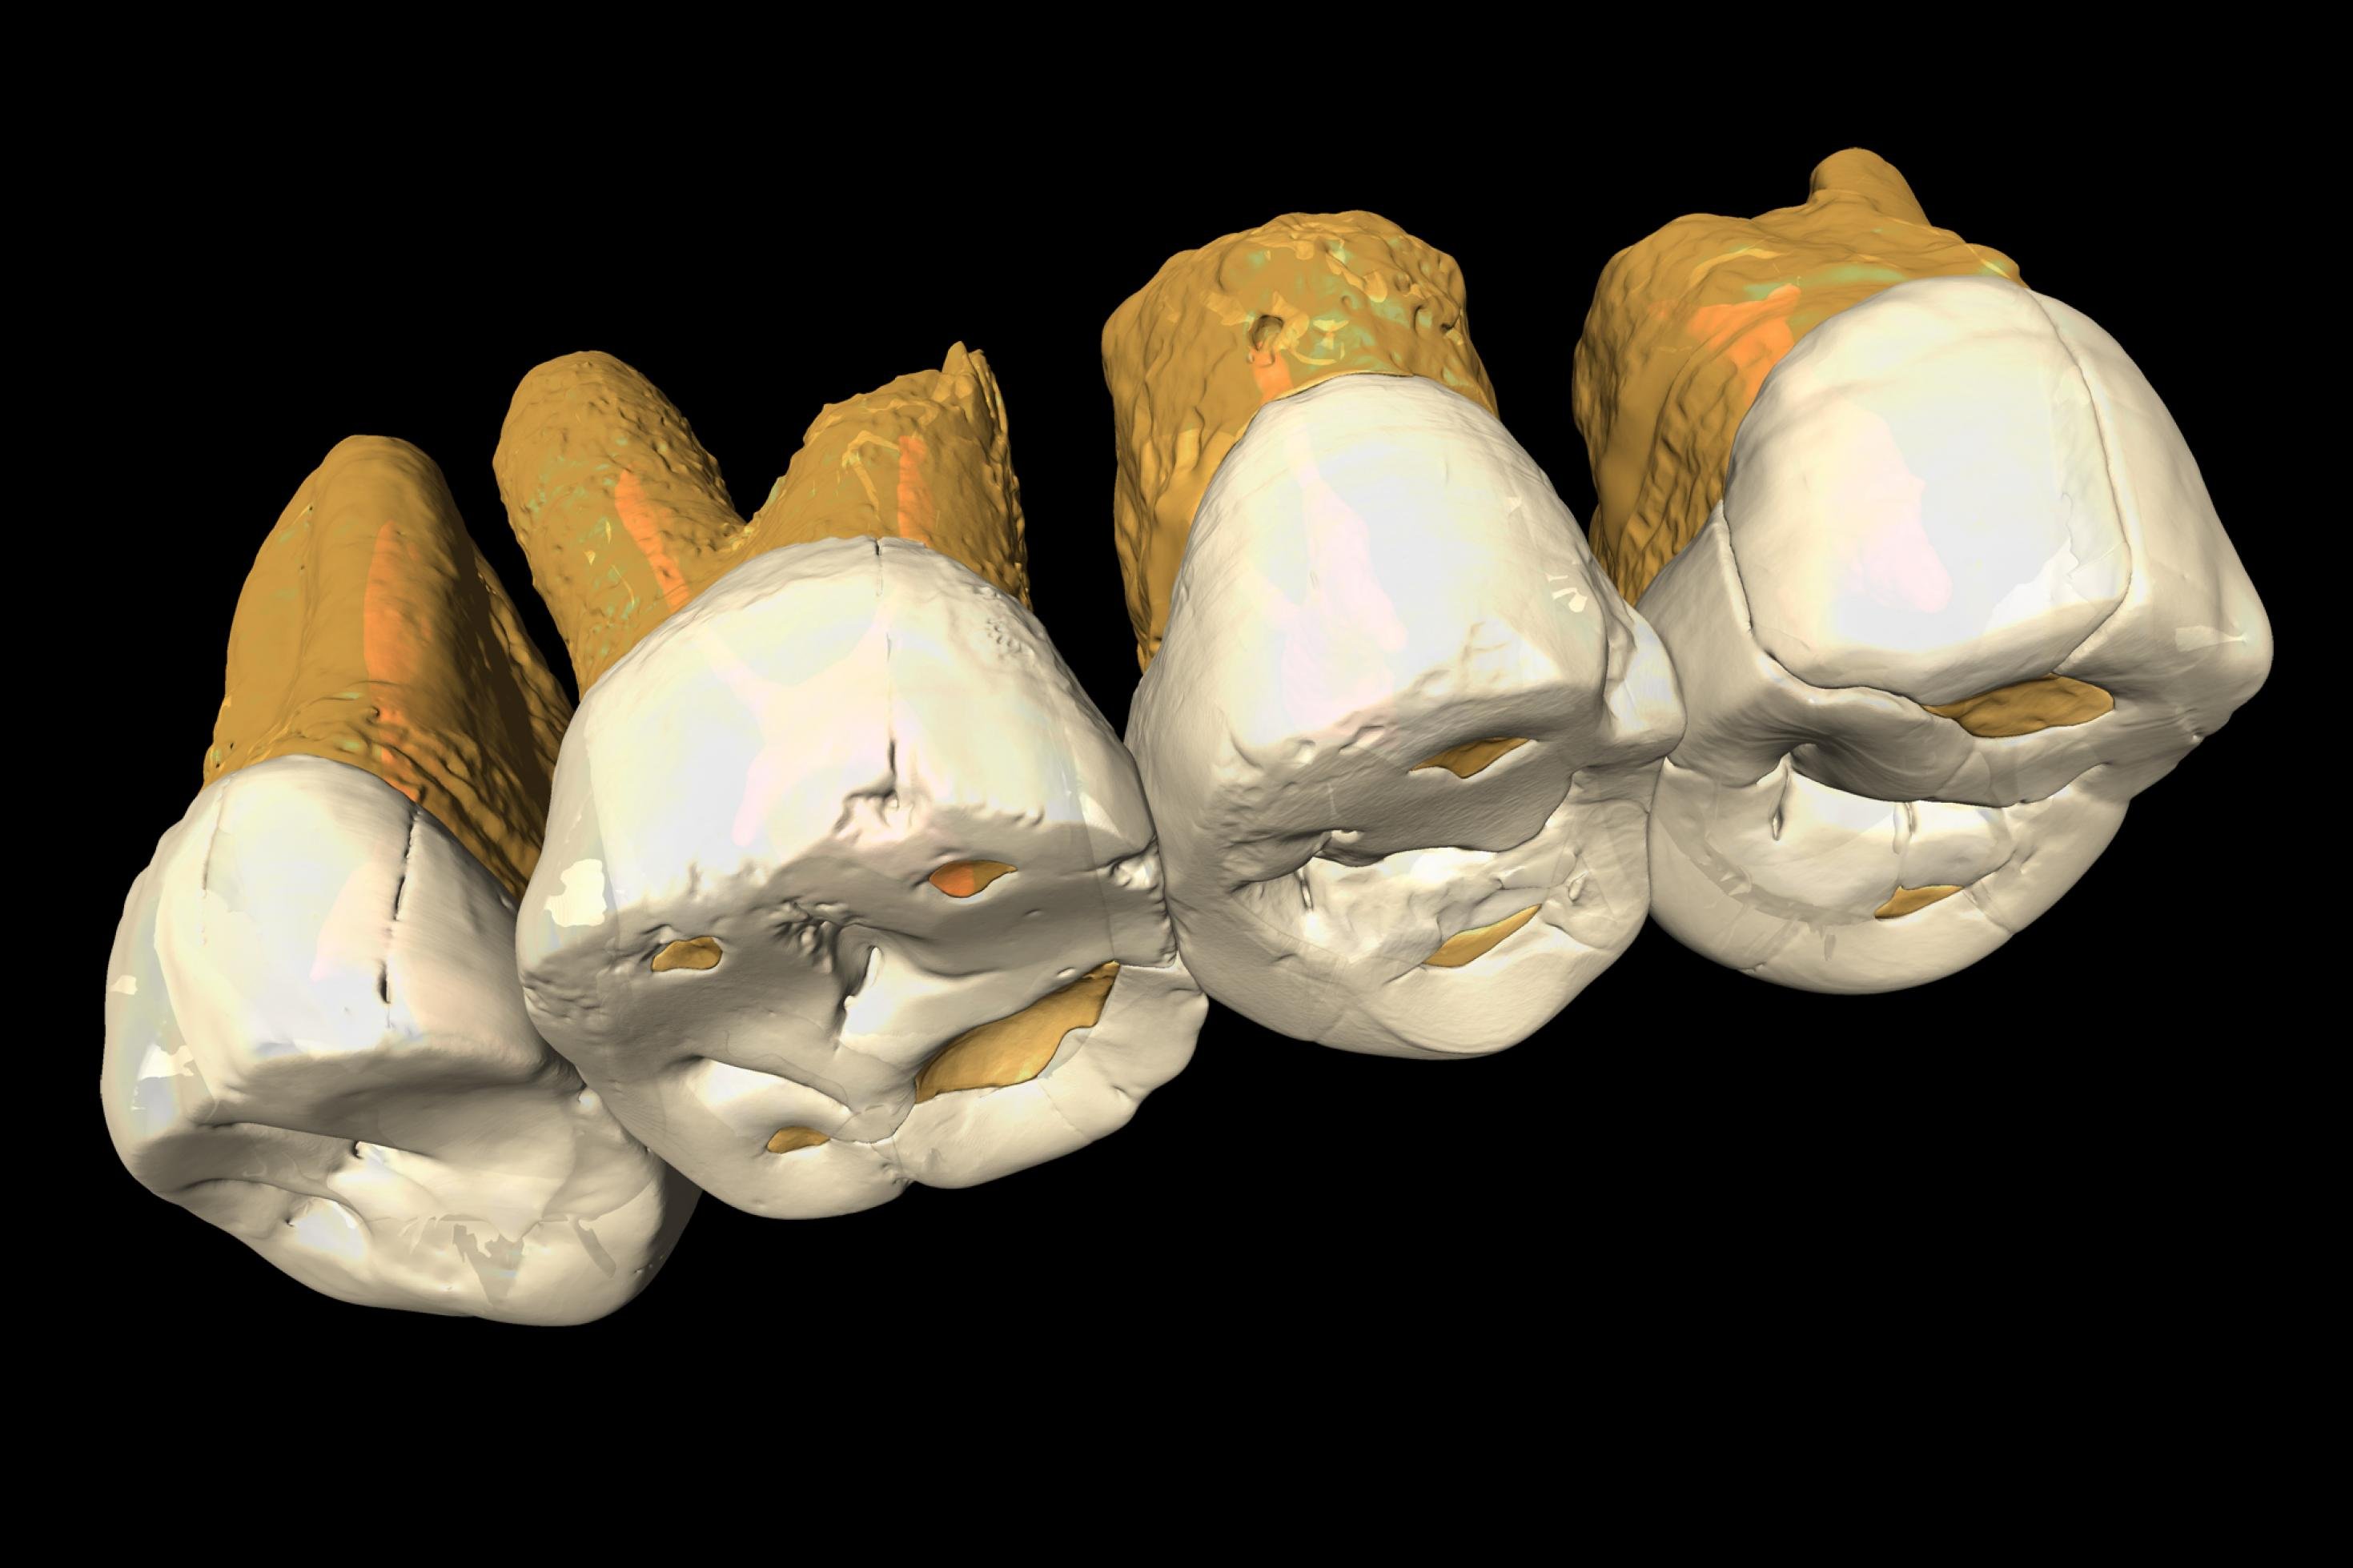 Auf dem Bild ist ein CT-Scan der Zähne von Homo luzonensis zu sehen. An der anatomischen Beschaffenheit der Zähne erkennen Paläoanthropologen eine Kombination von Merkmalen, wie sie bei keiner anderen Menschenart vorkommt